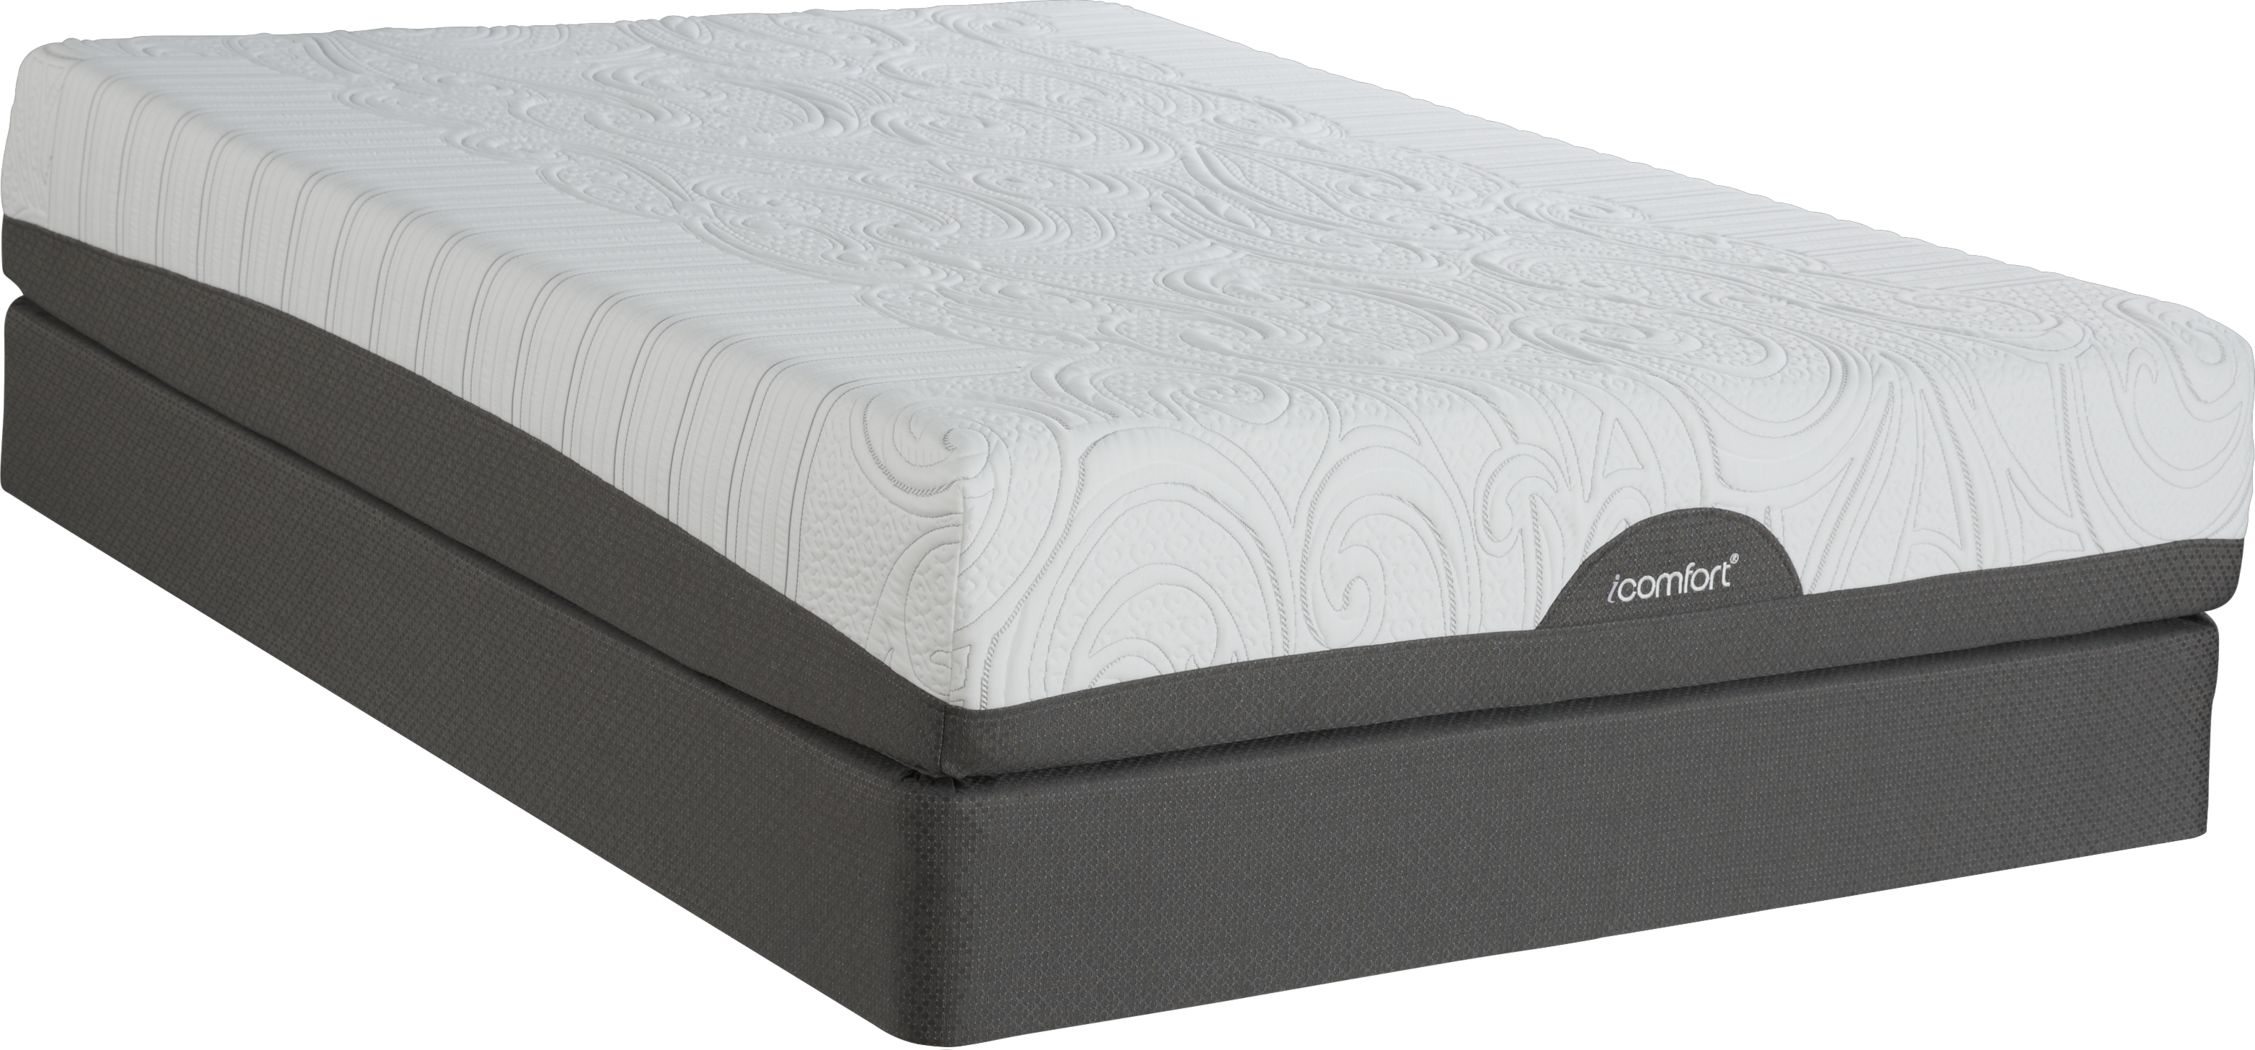 mattress firm serta icomfort savant